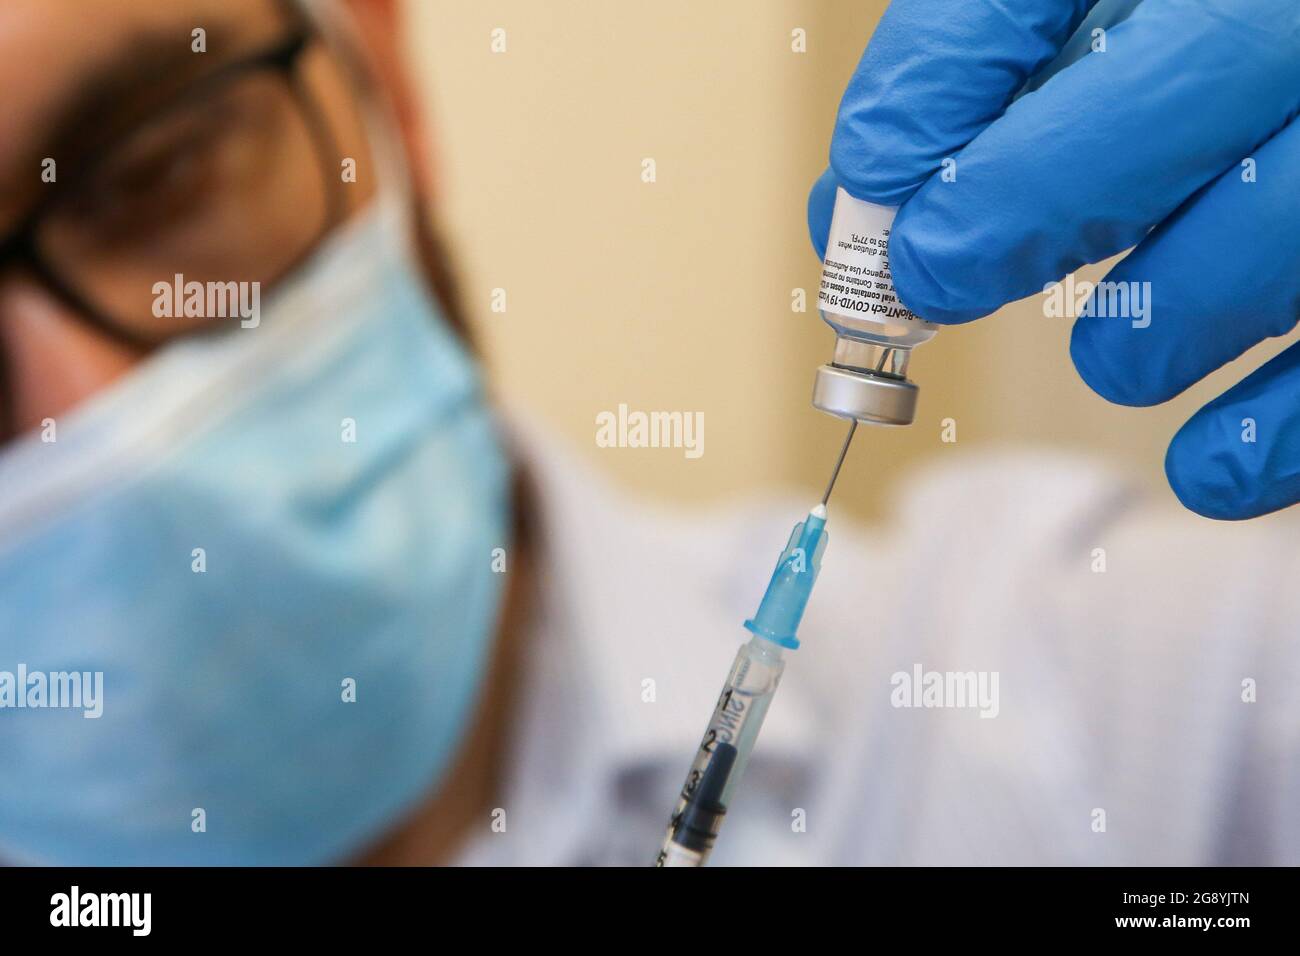 20 de julio de 2021, Londres, Reino Unido: El trabajador de salud del NHS se prepara para administrar la vacuna Pfizer/ BioNTec Covid-19 a un miembro del público en un centro de vacunación en Londres. (Imagen de crédito: © Dinendra Haria/SOPA Images via ZUMA Press Wire) Foto de stock